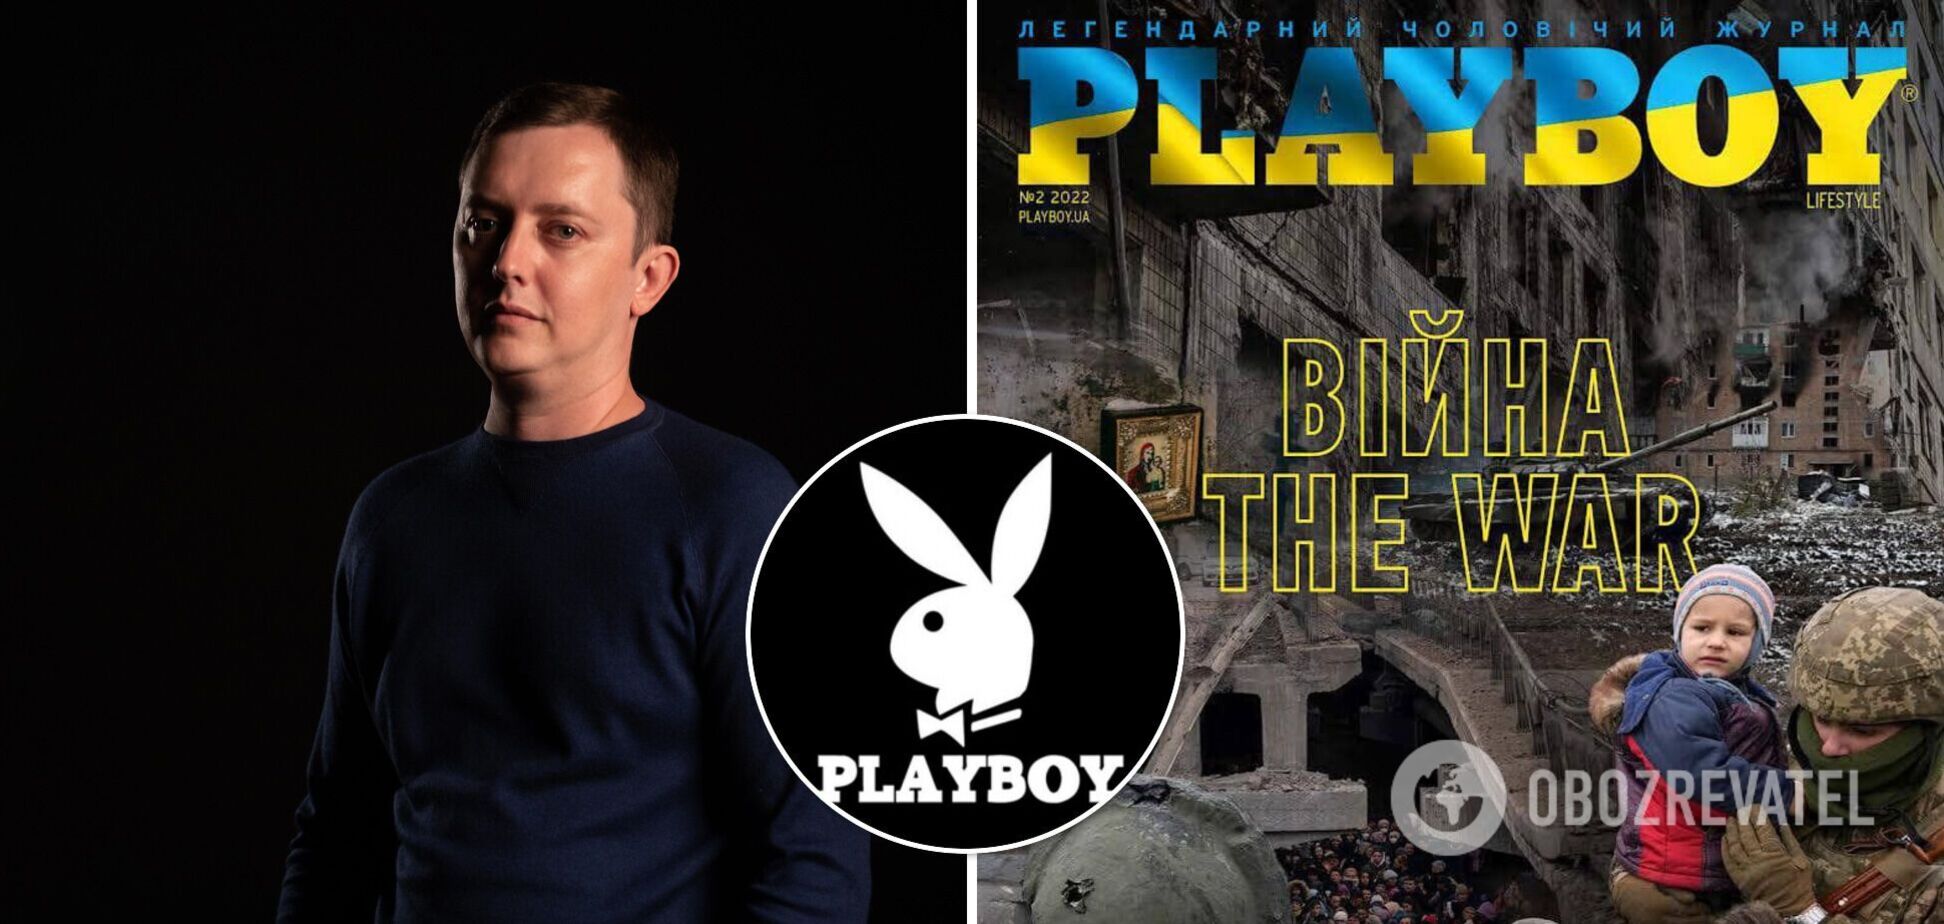 Американський офіс закриває Playboy в Україні після 17 років існування. Причиною міг стати випуск про війну